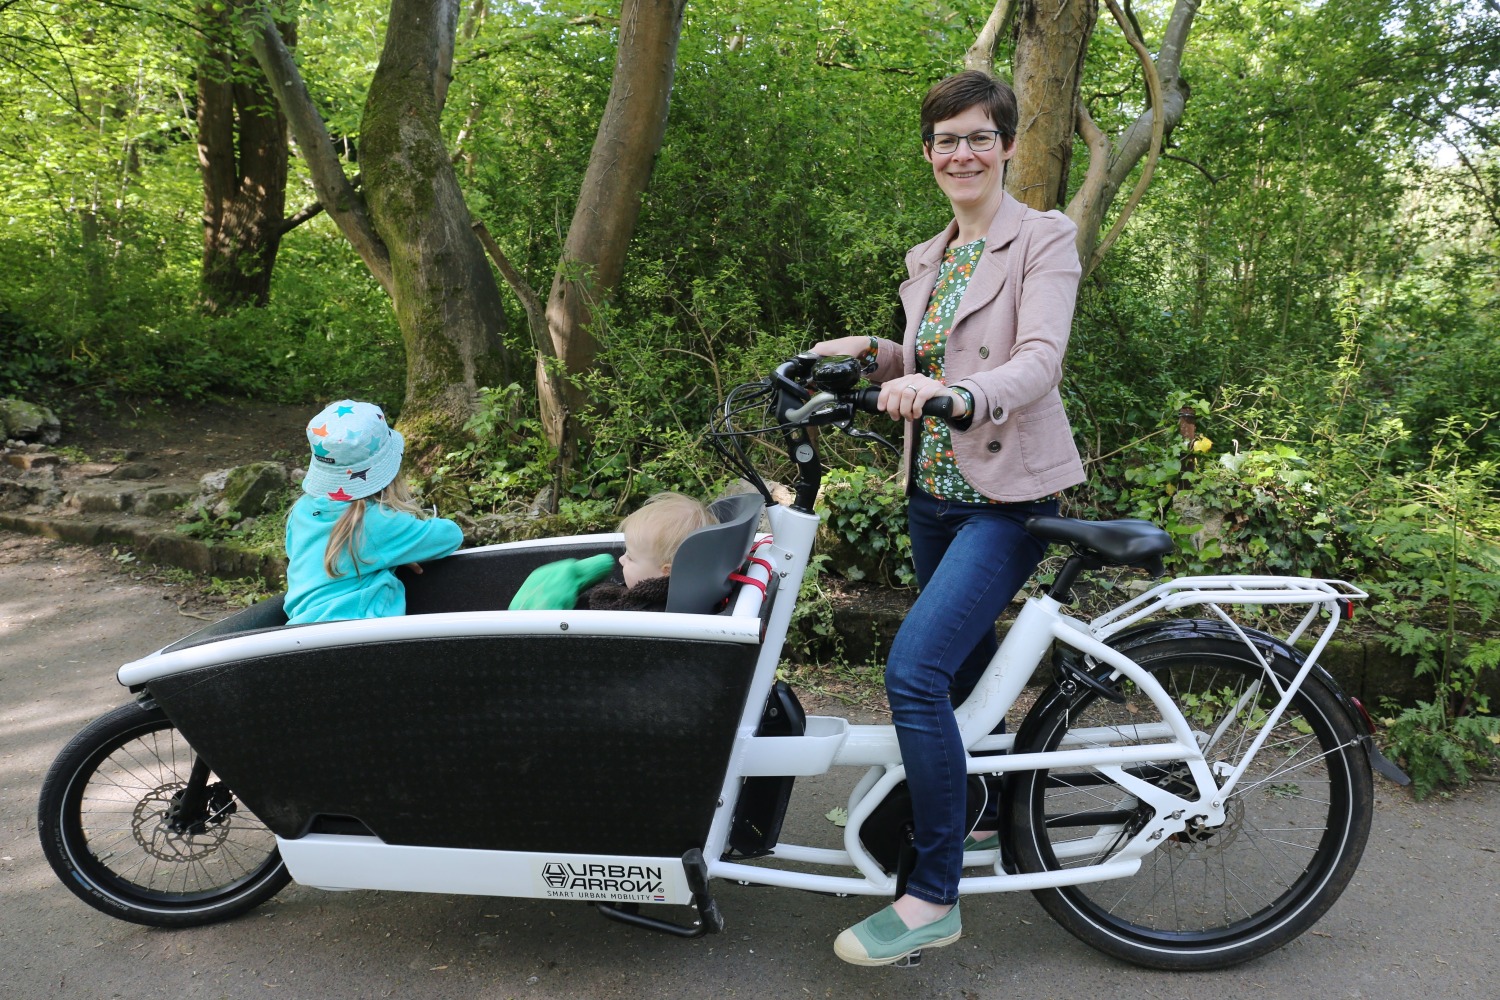 Urban Arrow box bike to carry children